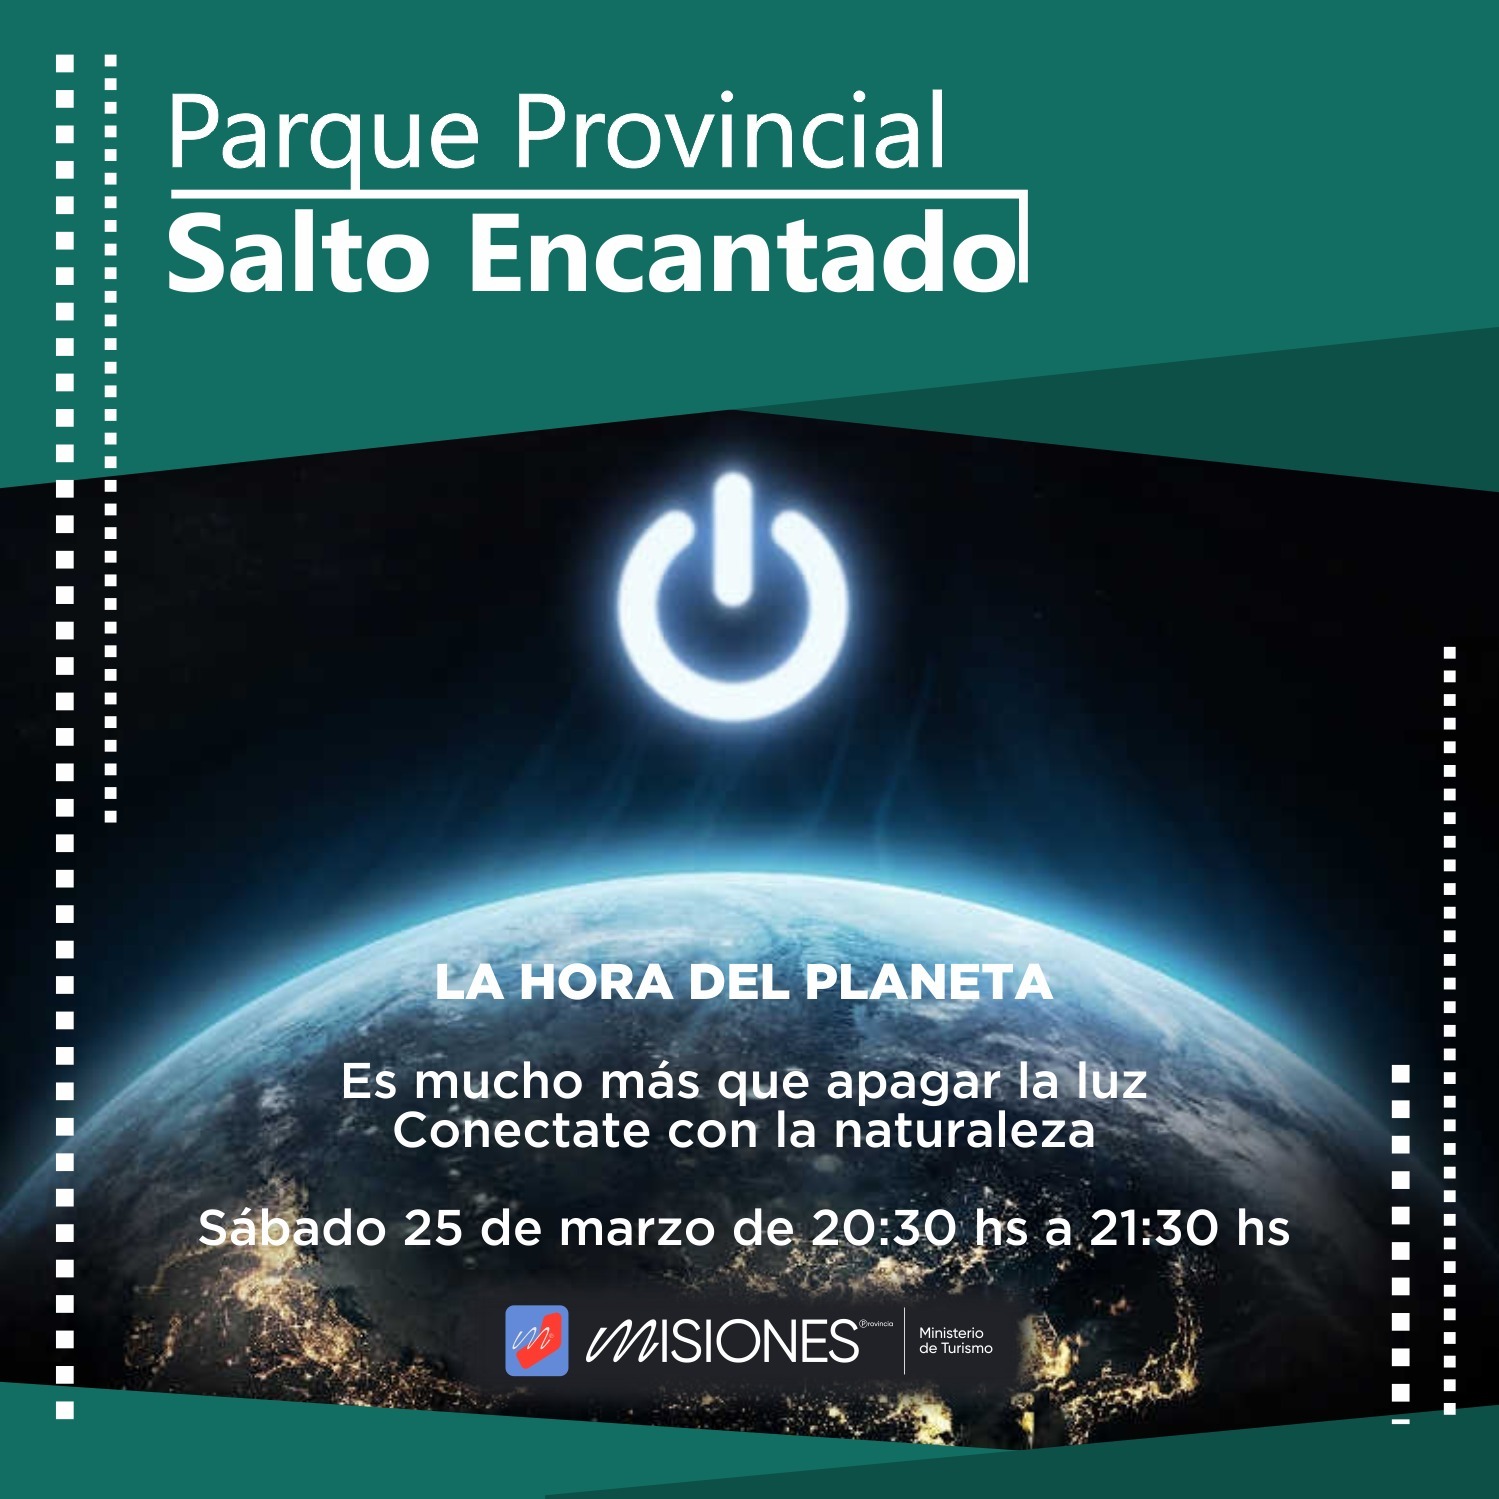 Los Parques Provinciales misioneros se suman a la Hora del Planeta